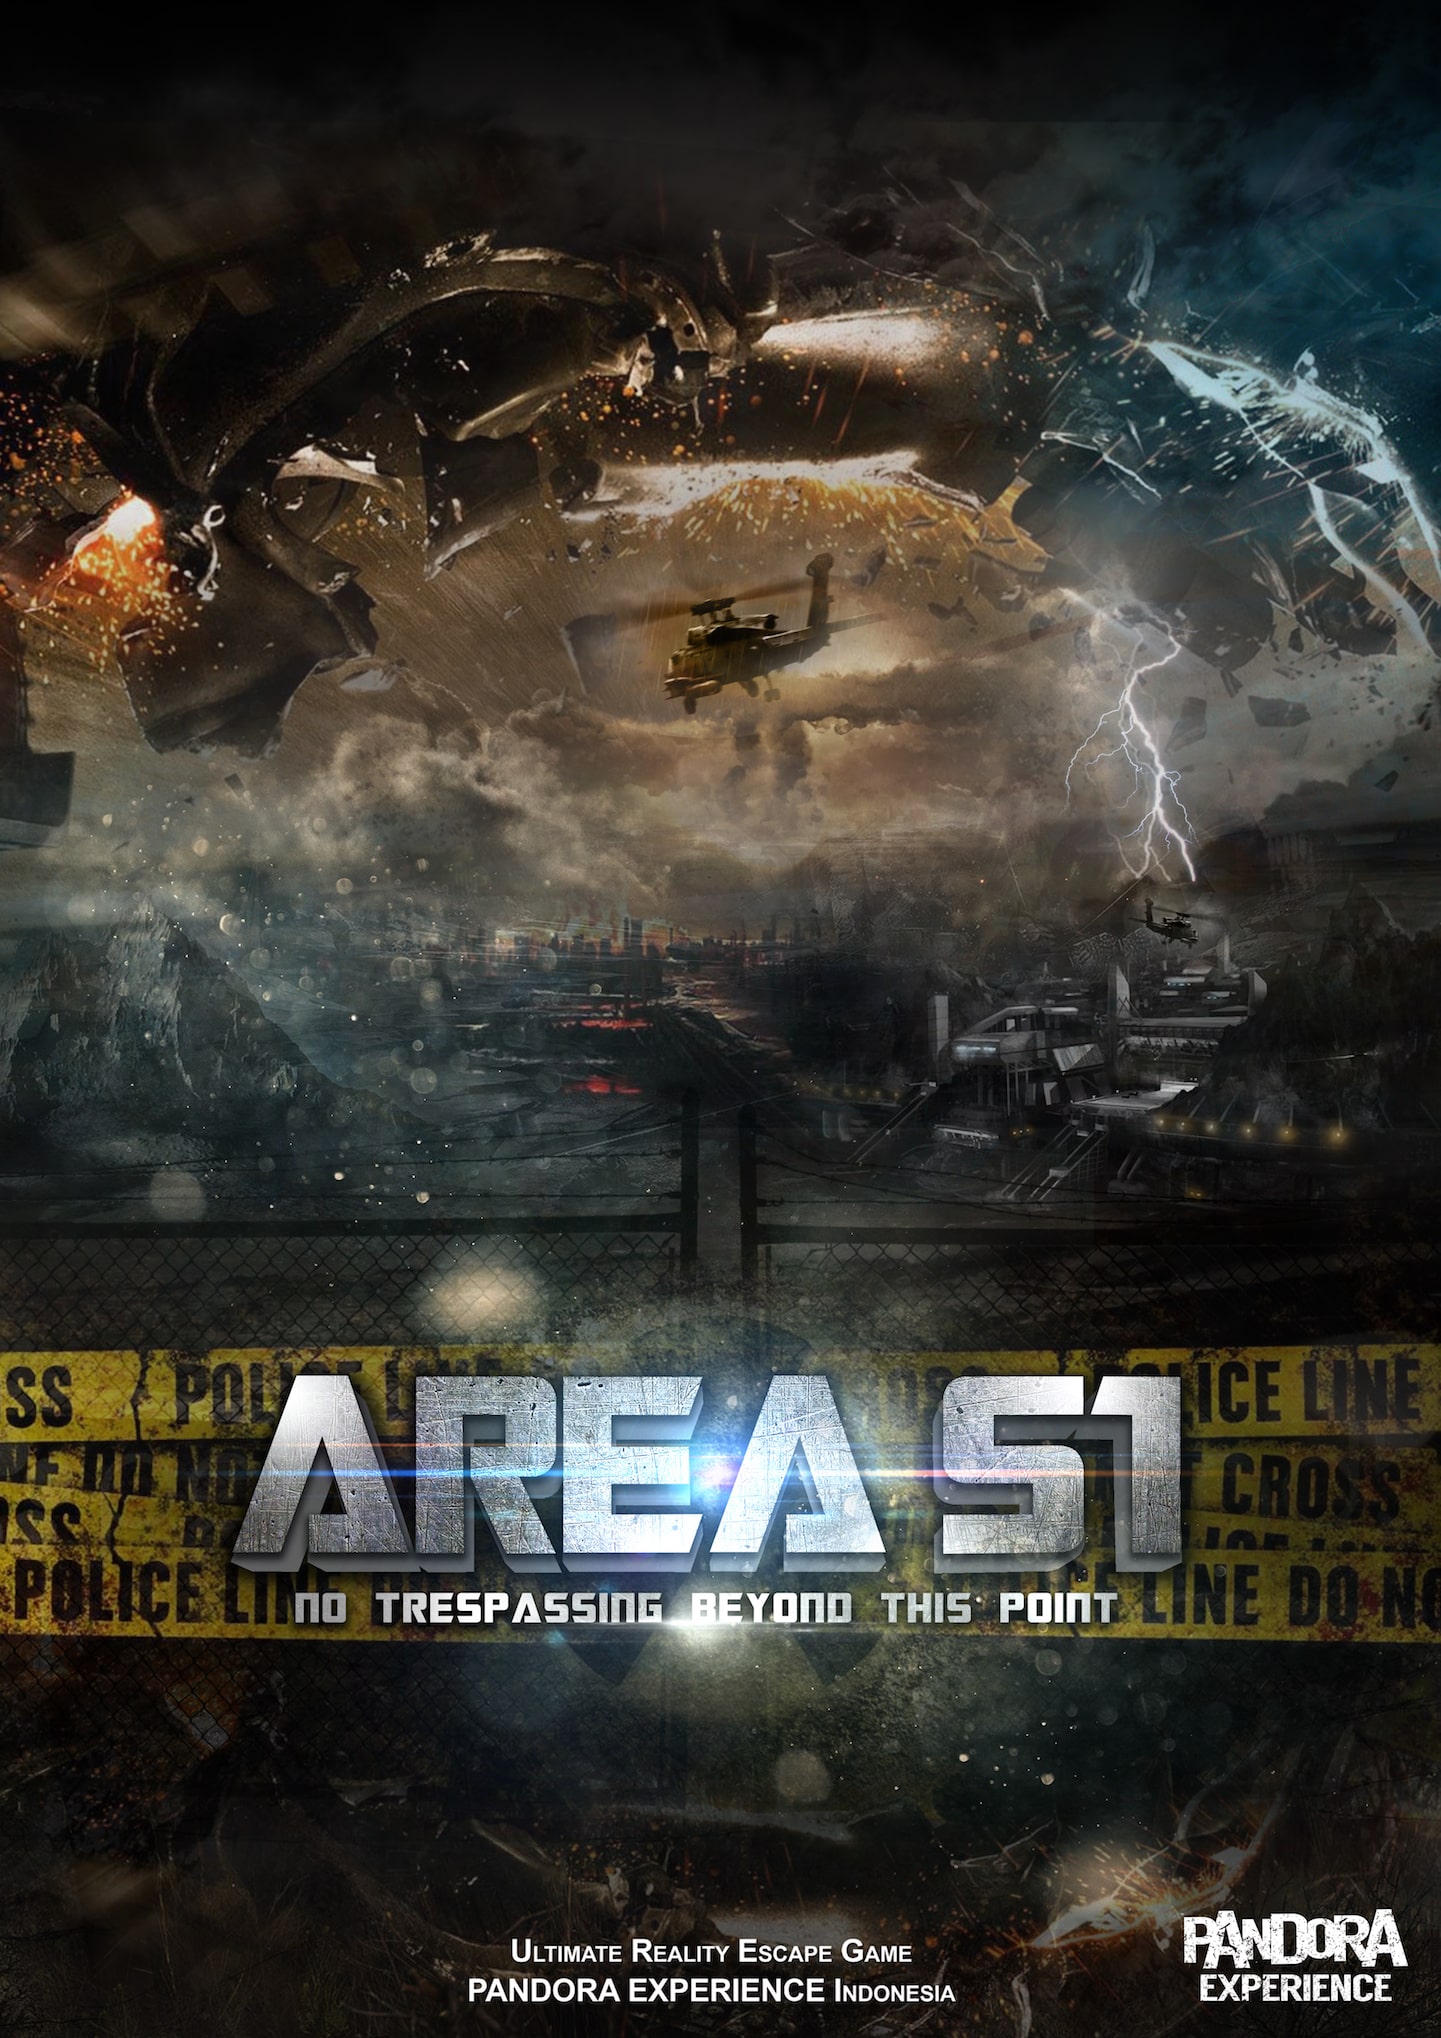 The Area 51 Adventure Escape Room Challenge